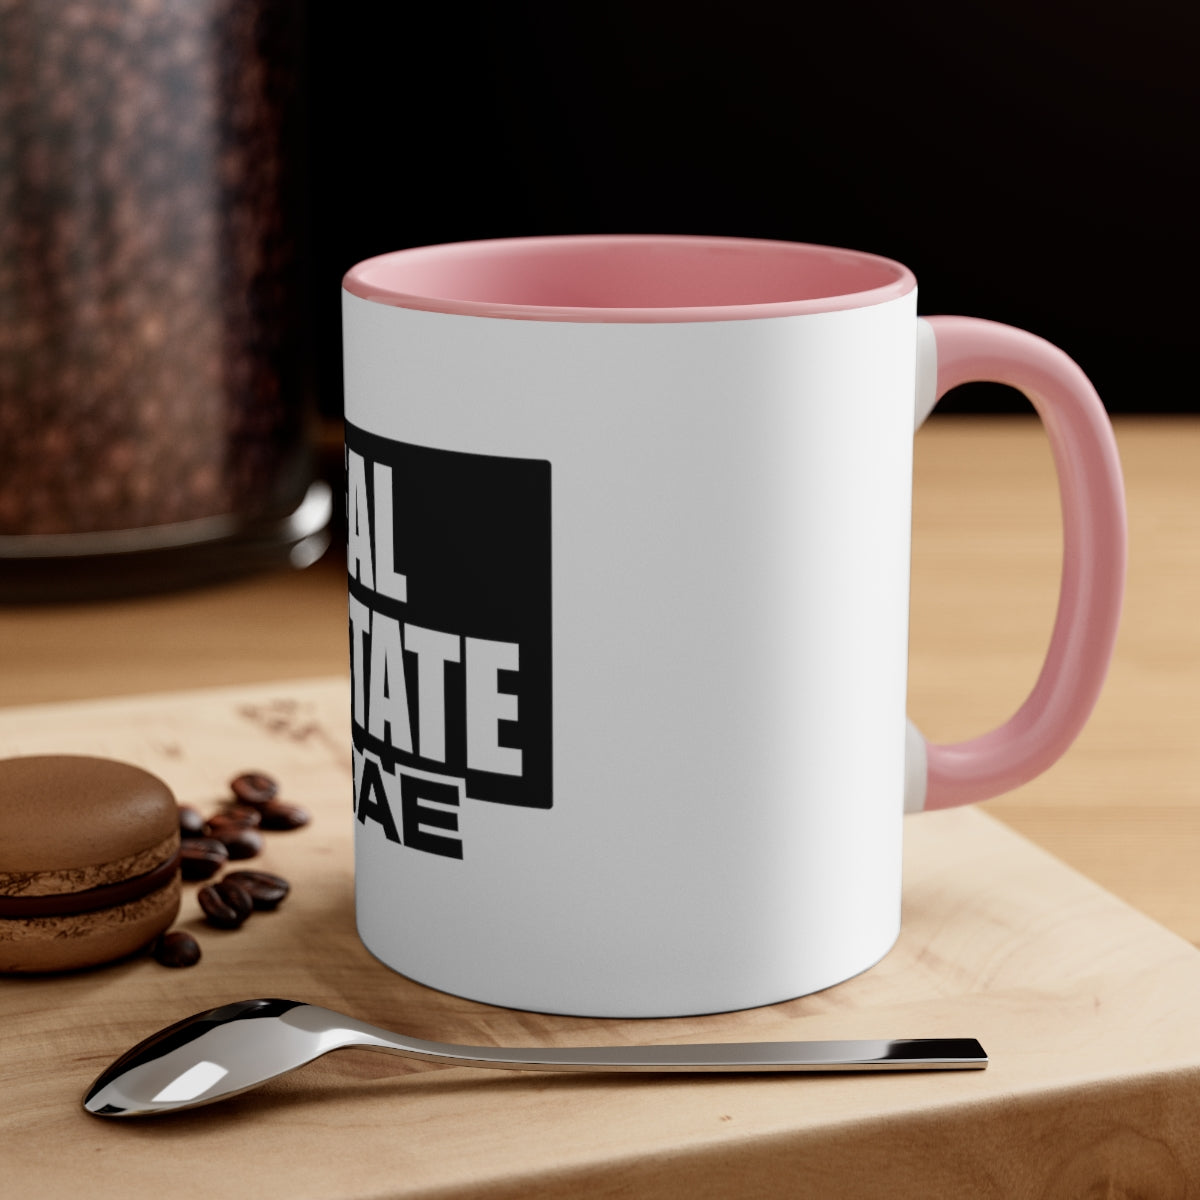 Real Estate Bae™ Two Tone Coffee Mug, 11oz